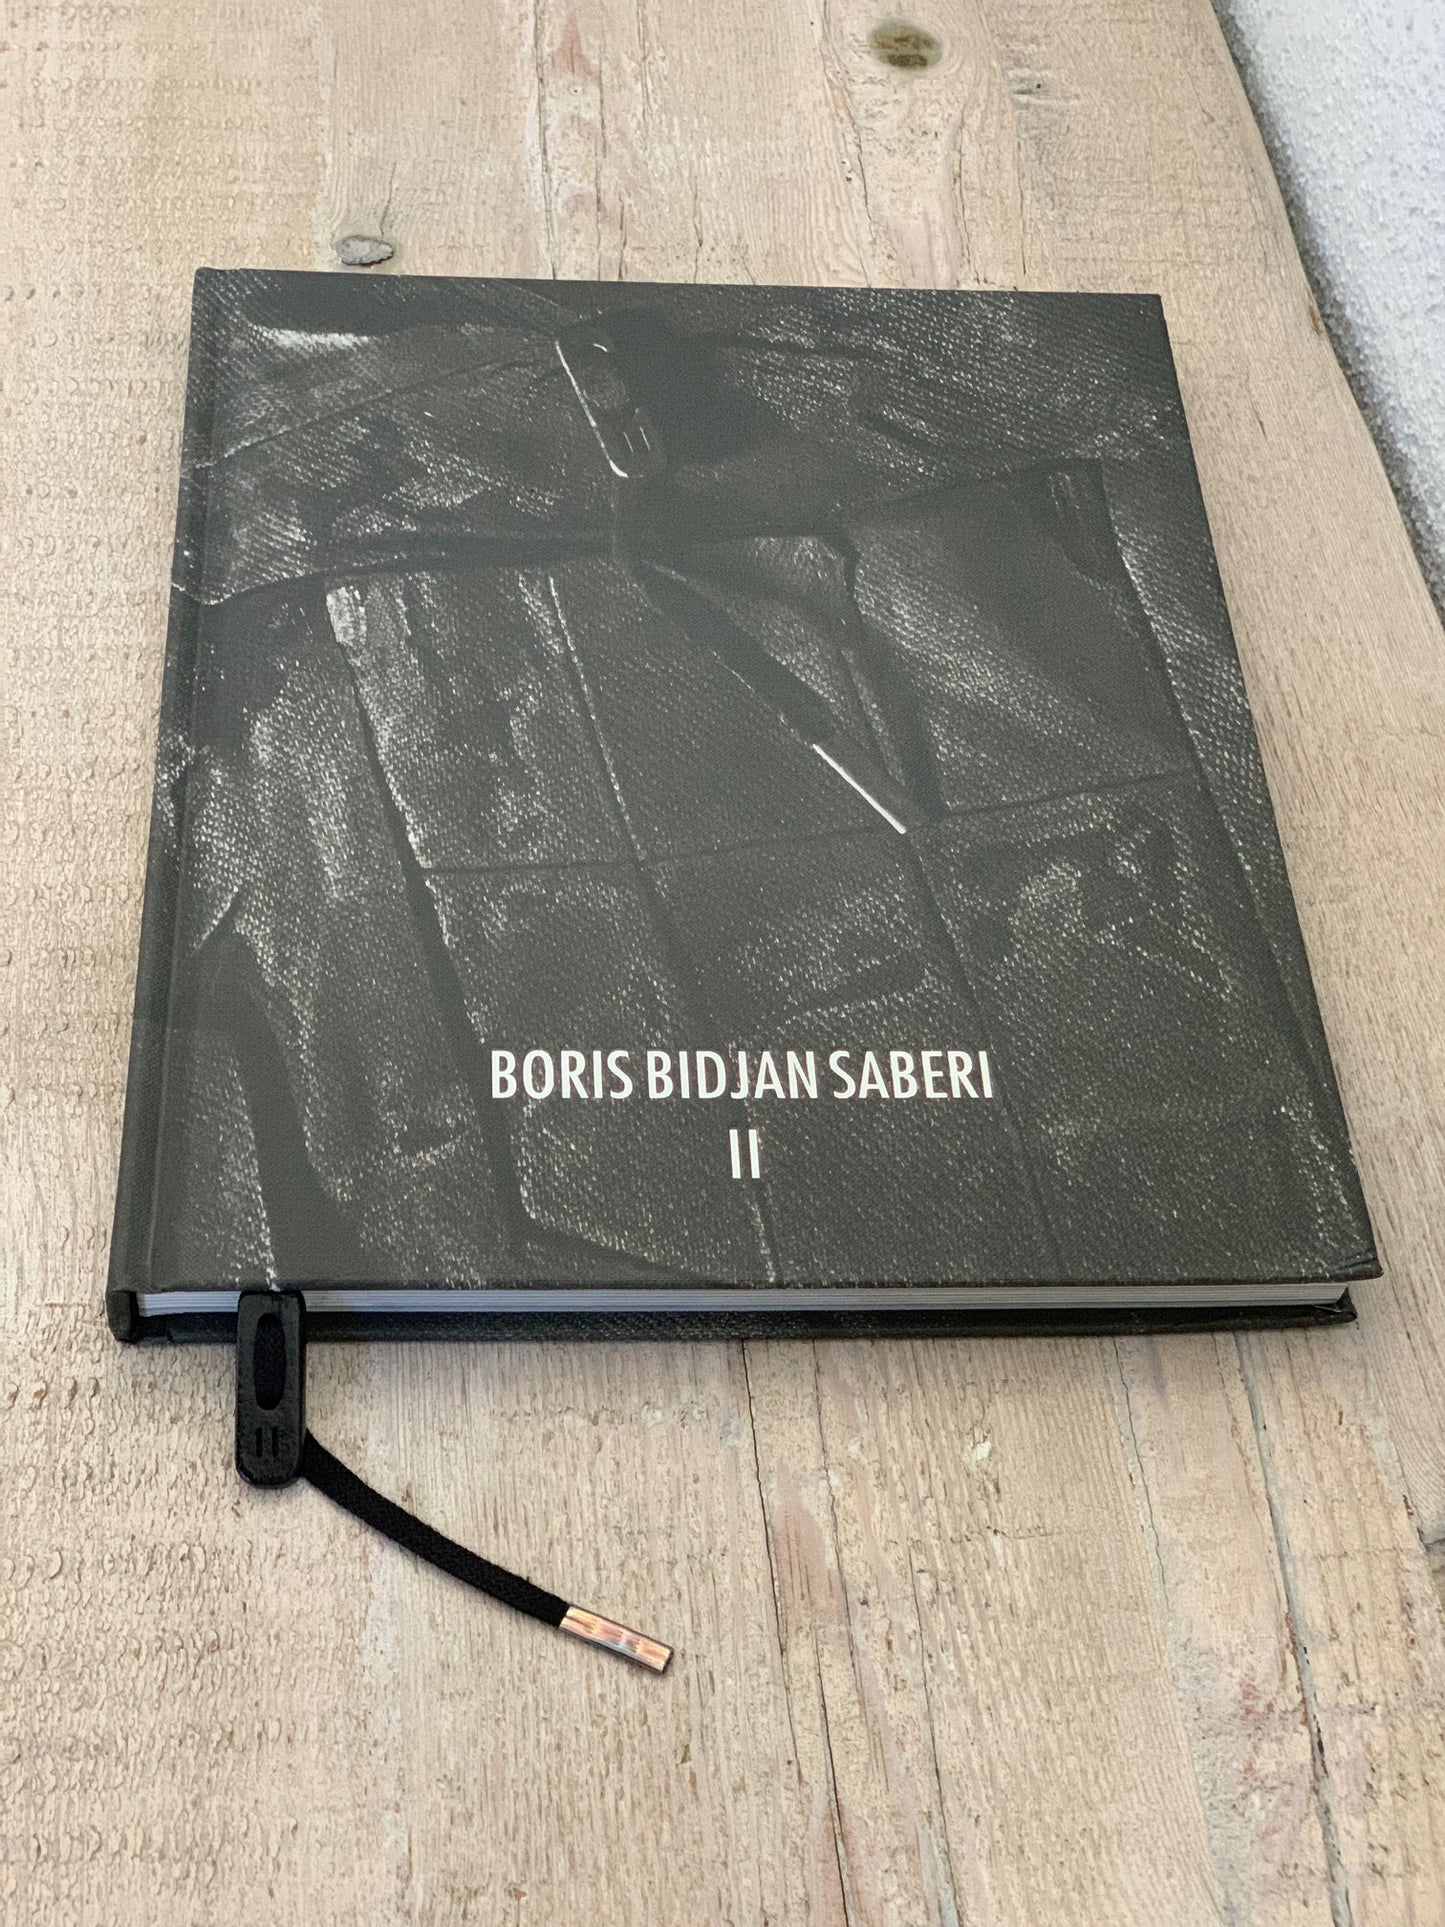 Boris Bidjan Saberi 11 Hardcover Book